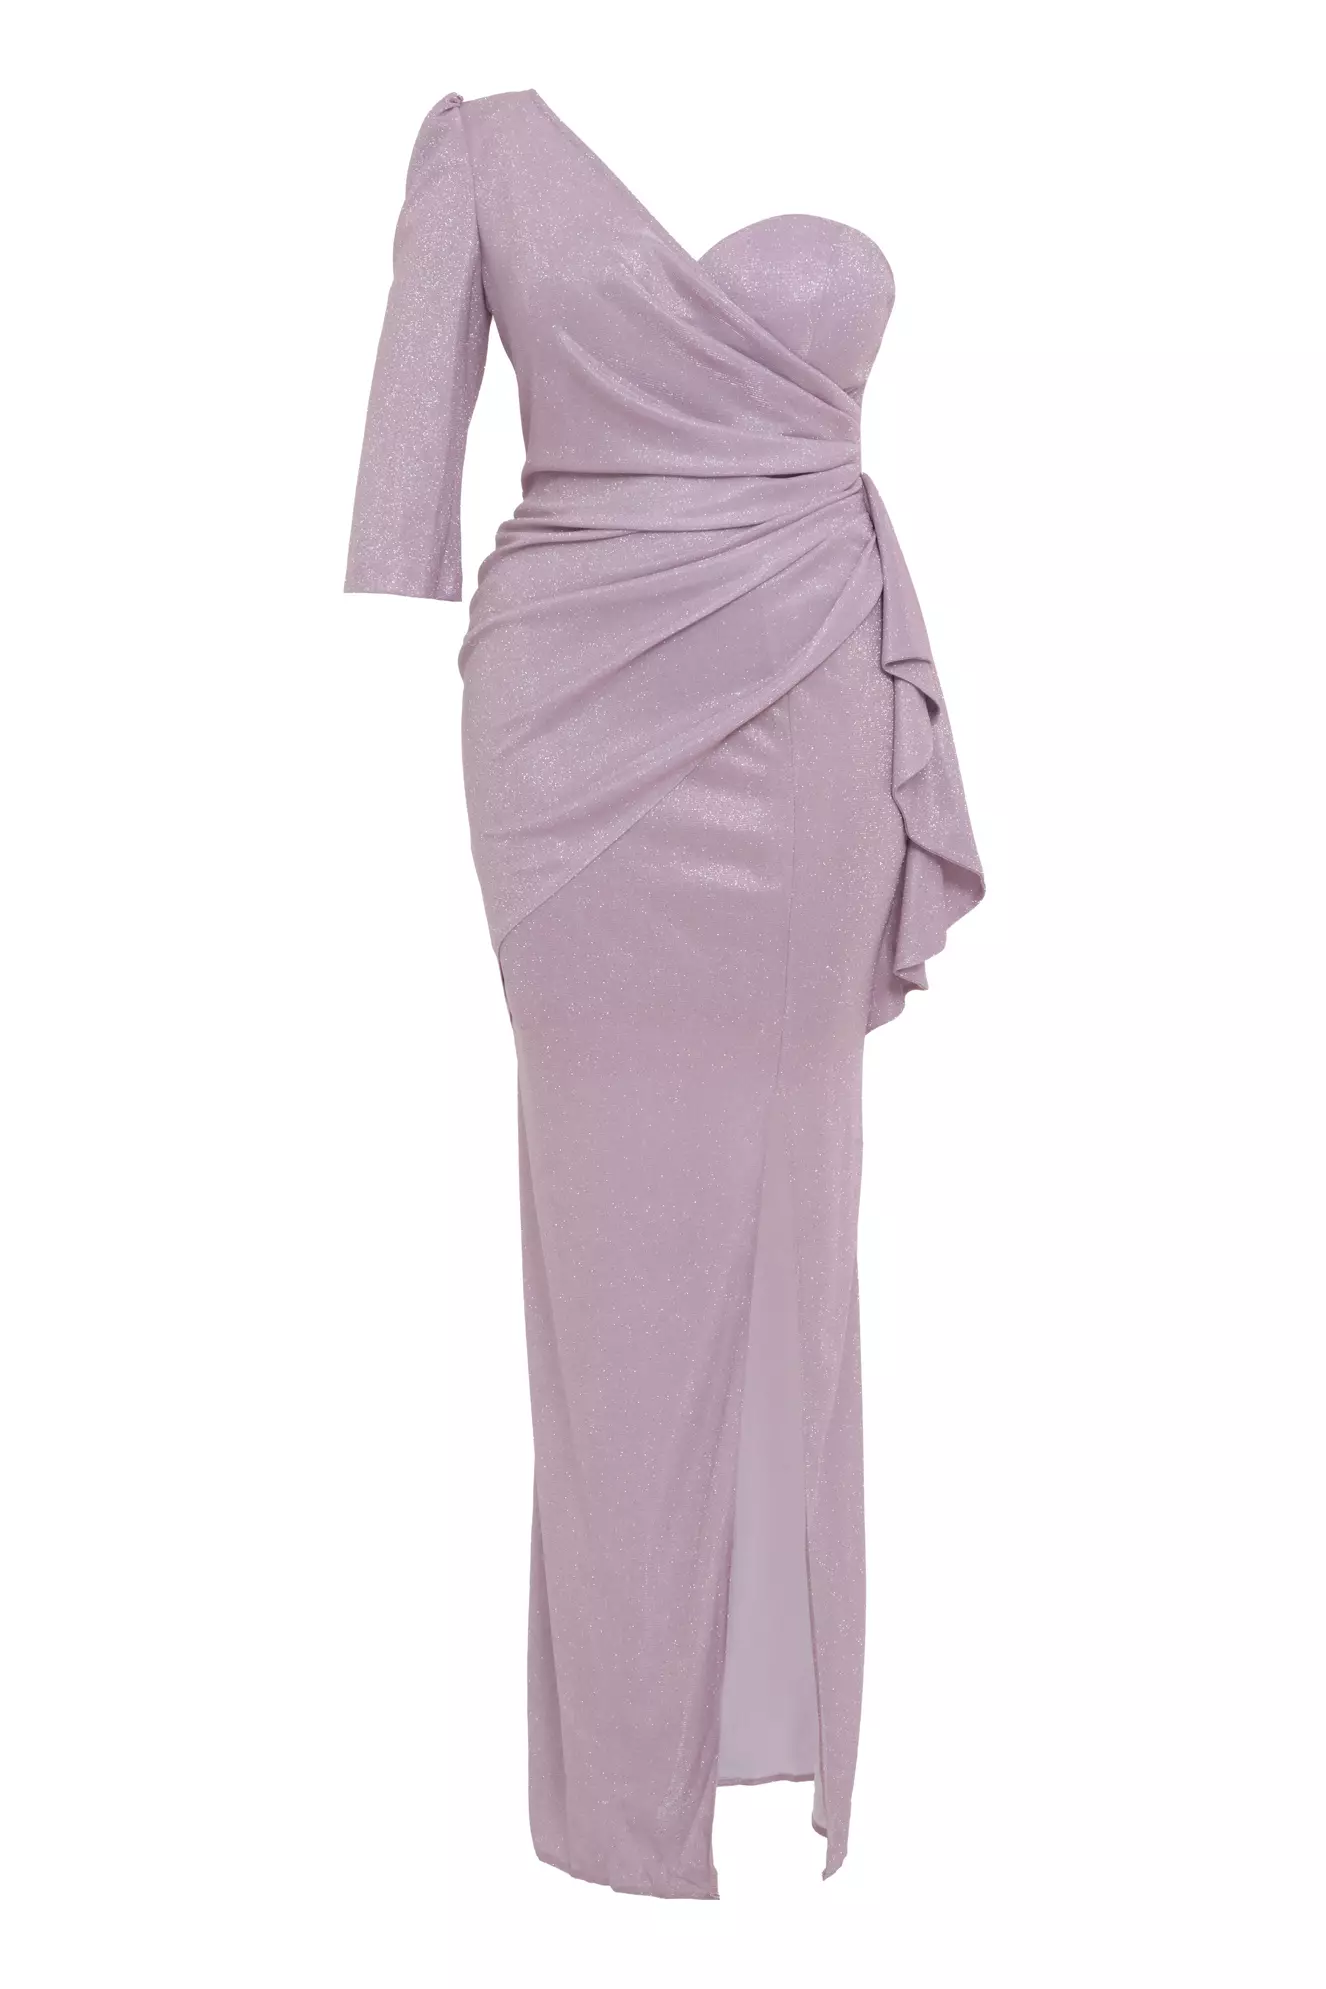 Blush plus size glare single sleeve maxi dress